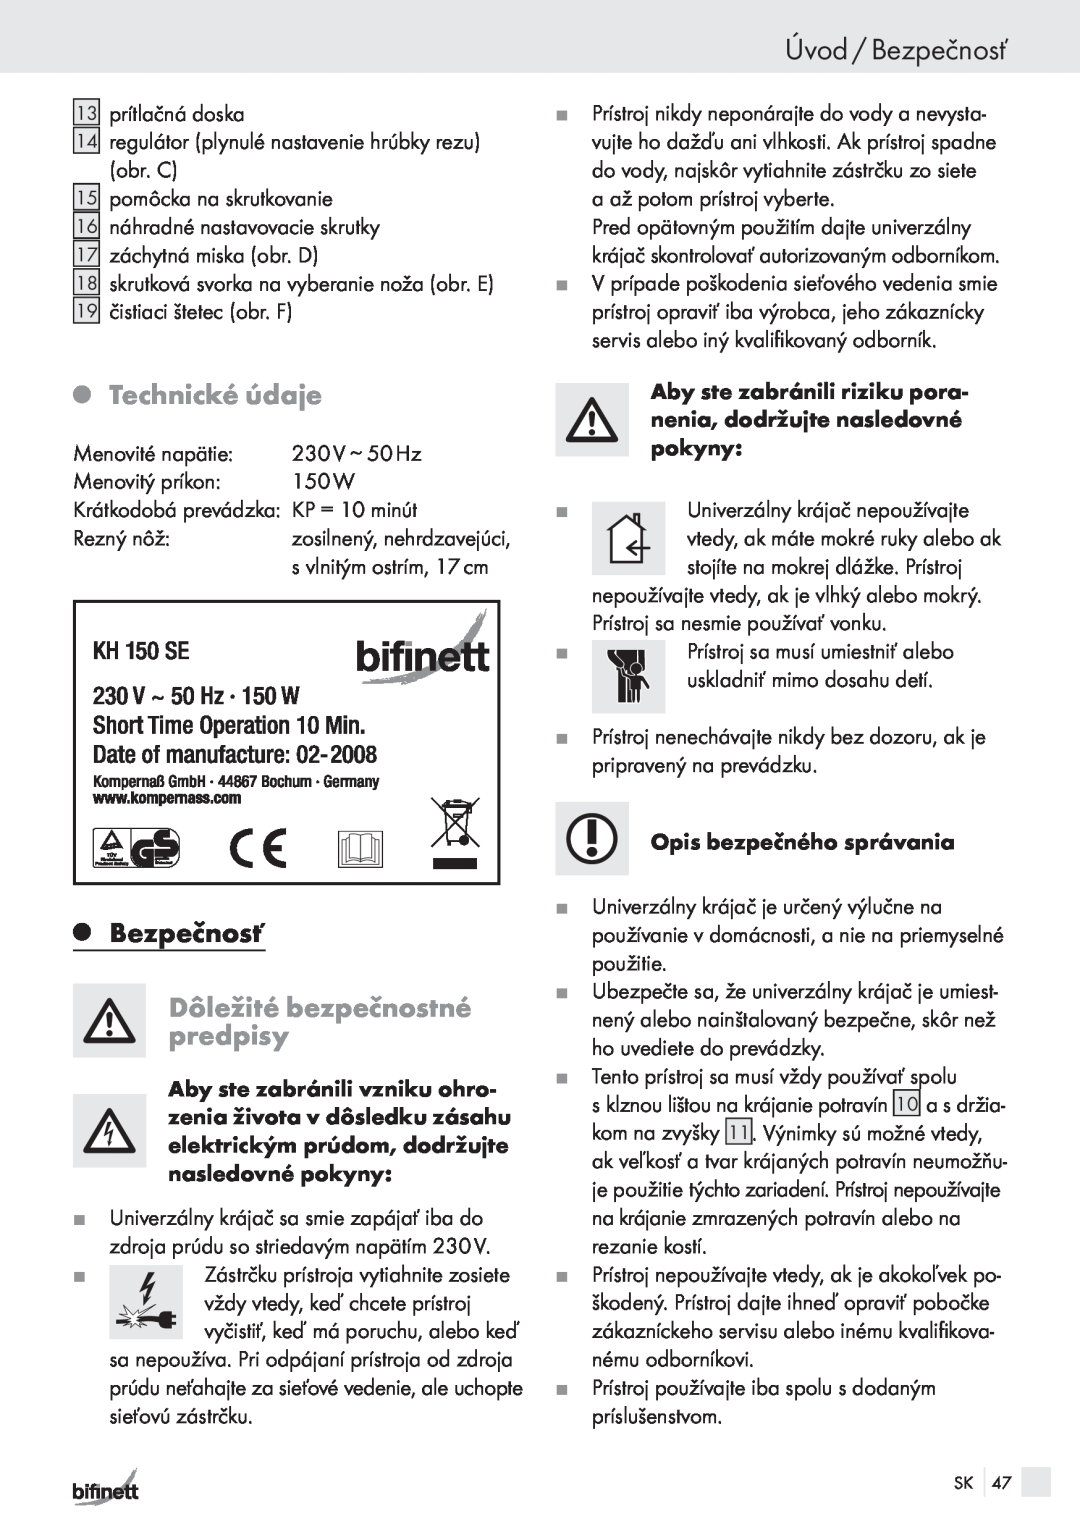 Bifinett KH 150 manual Úvod / Bezpečnosť, QBezpečnosť, Dôležité bezpečnostné predpisy, QTechnické údaje 